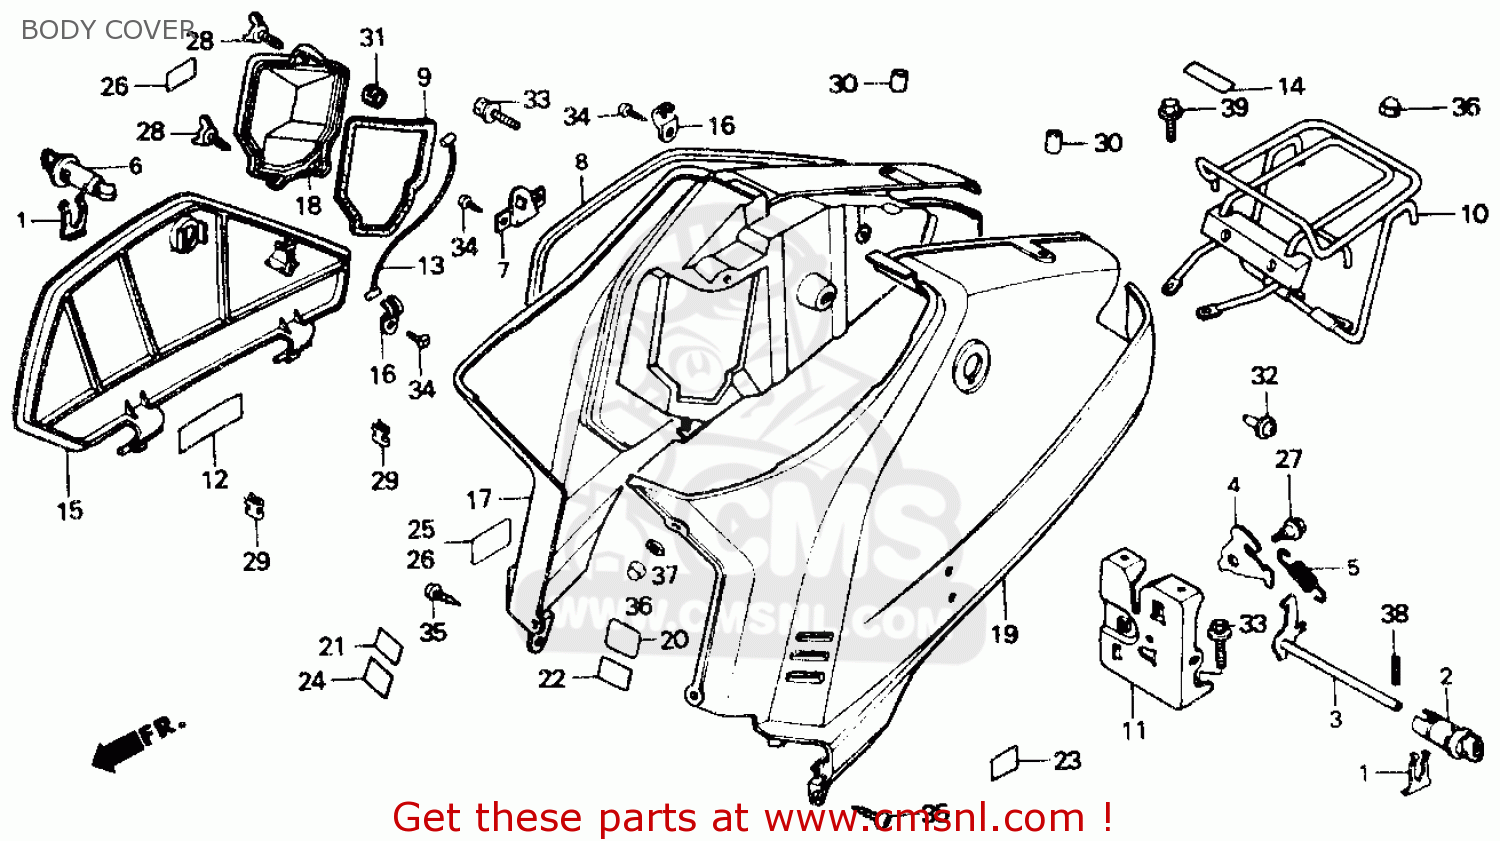 1985 Honda aero 50 parts #1